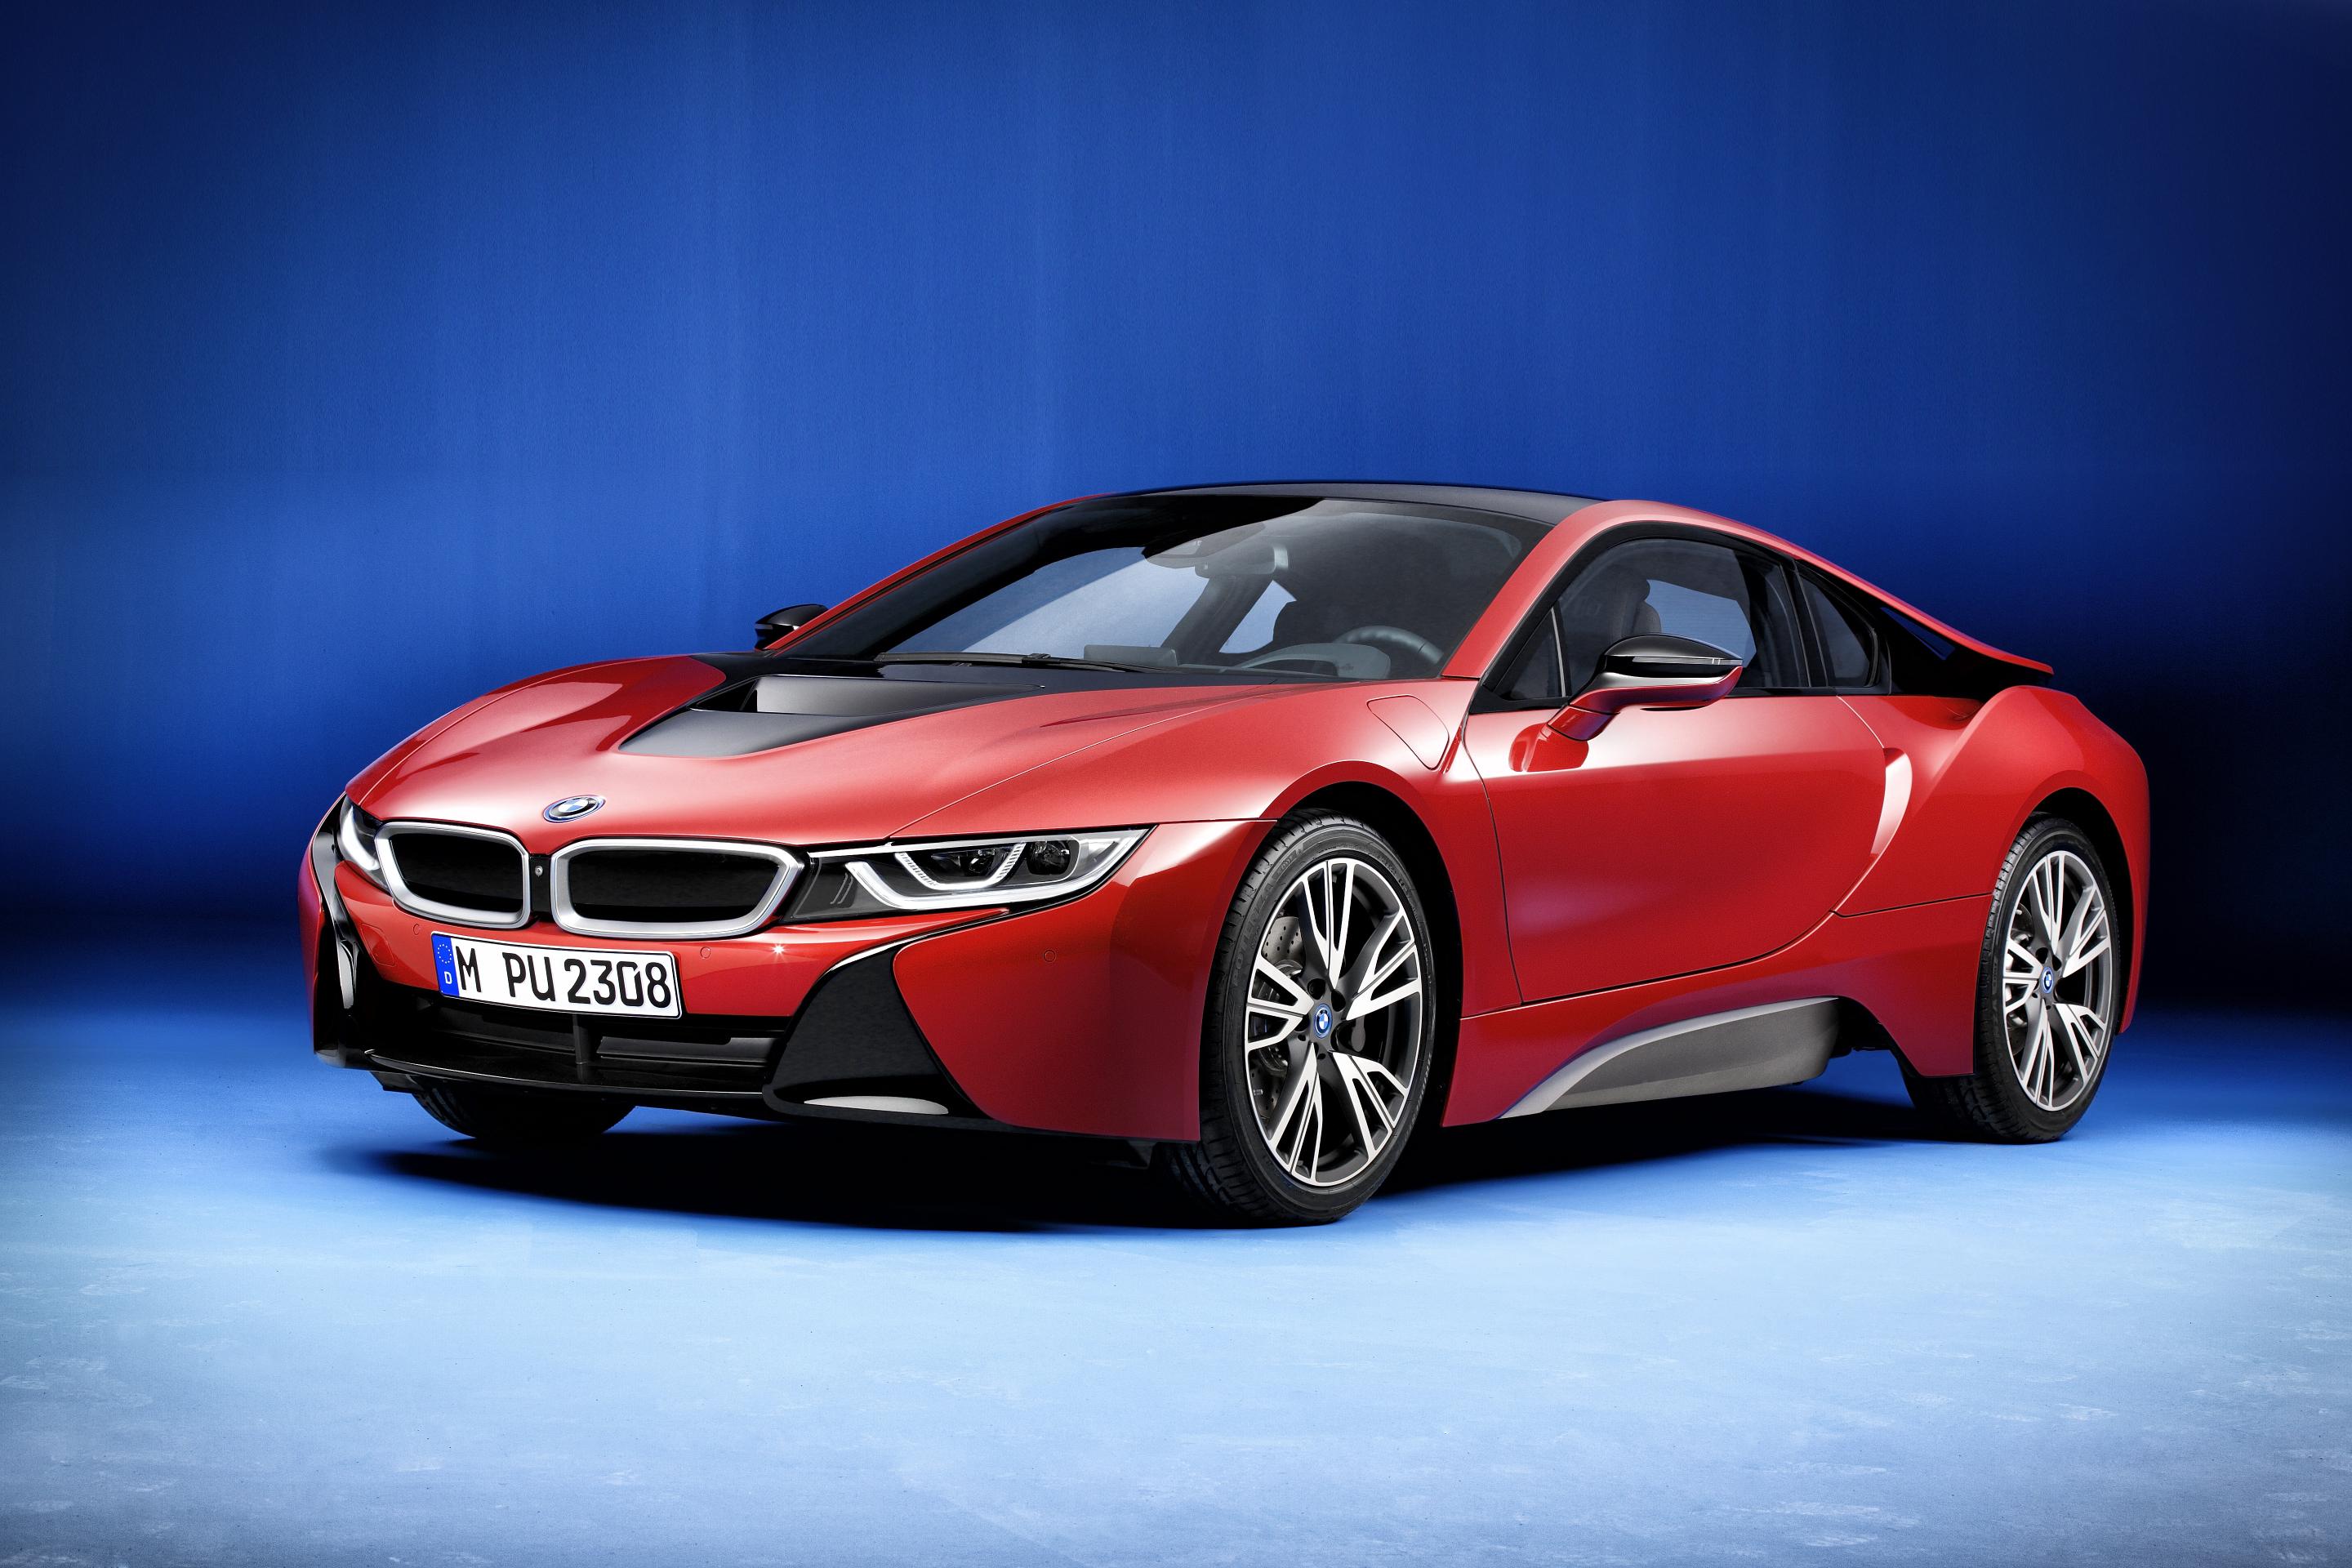 Exclusiva versión Protonic Red Edition para el BMW i8